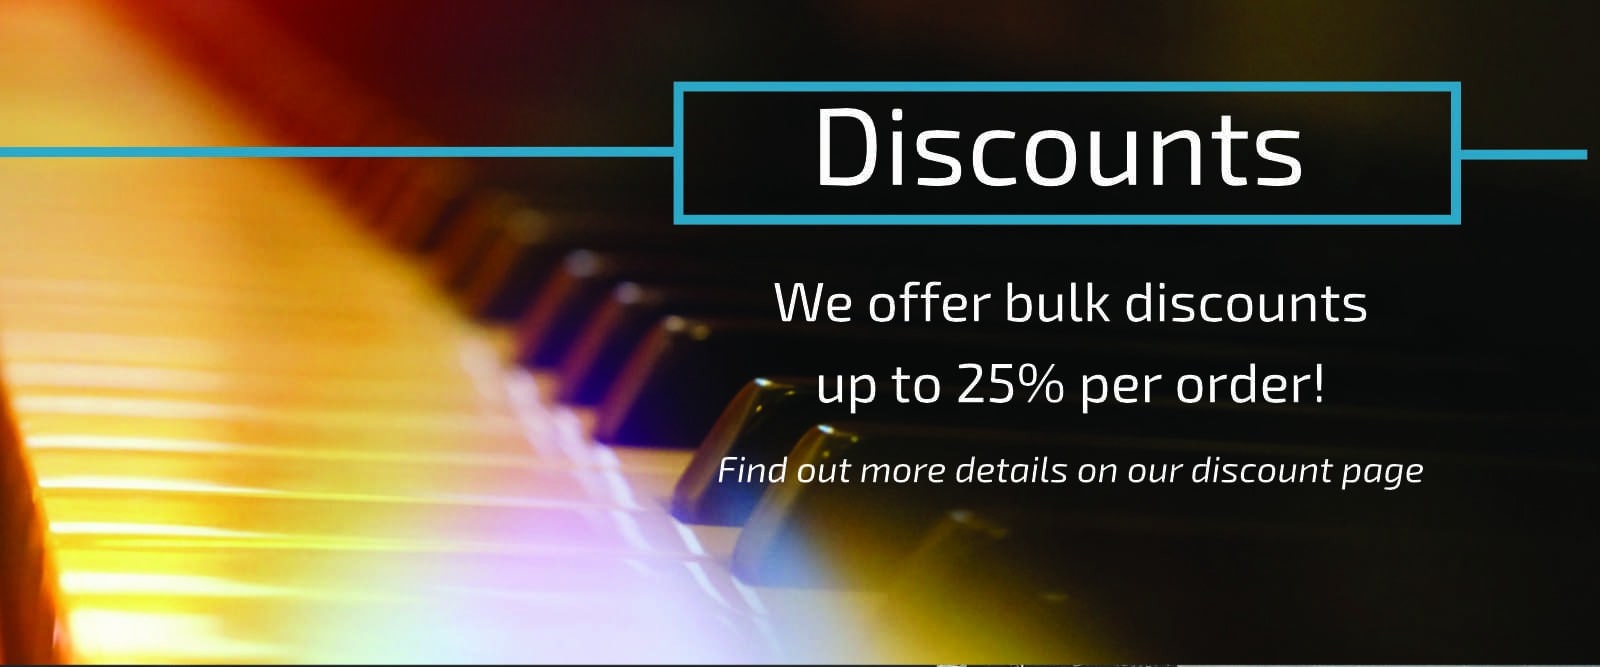 Bulk discount